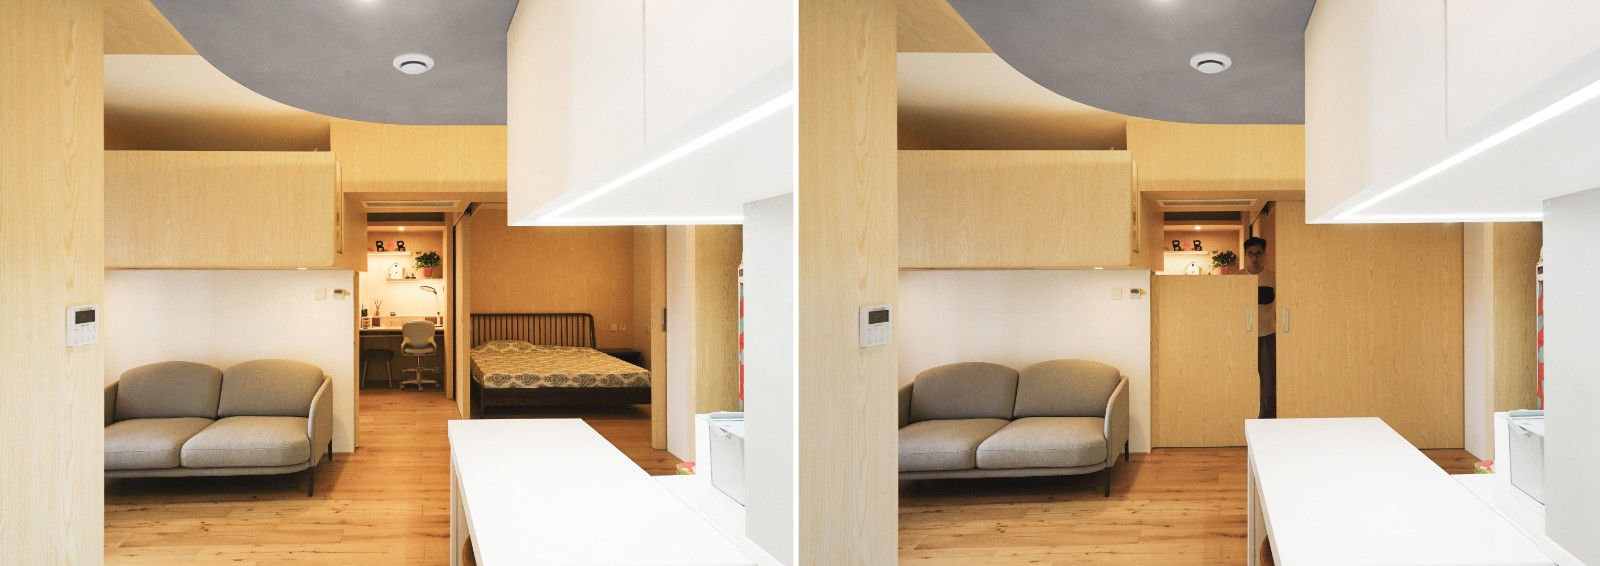 客厅木地板5装修效果图木两居·北京日式客厅设计图片赏析